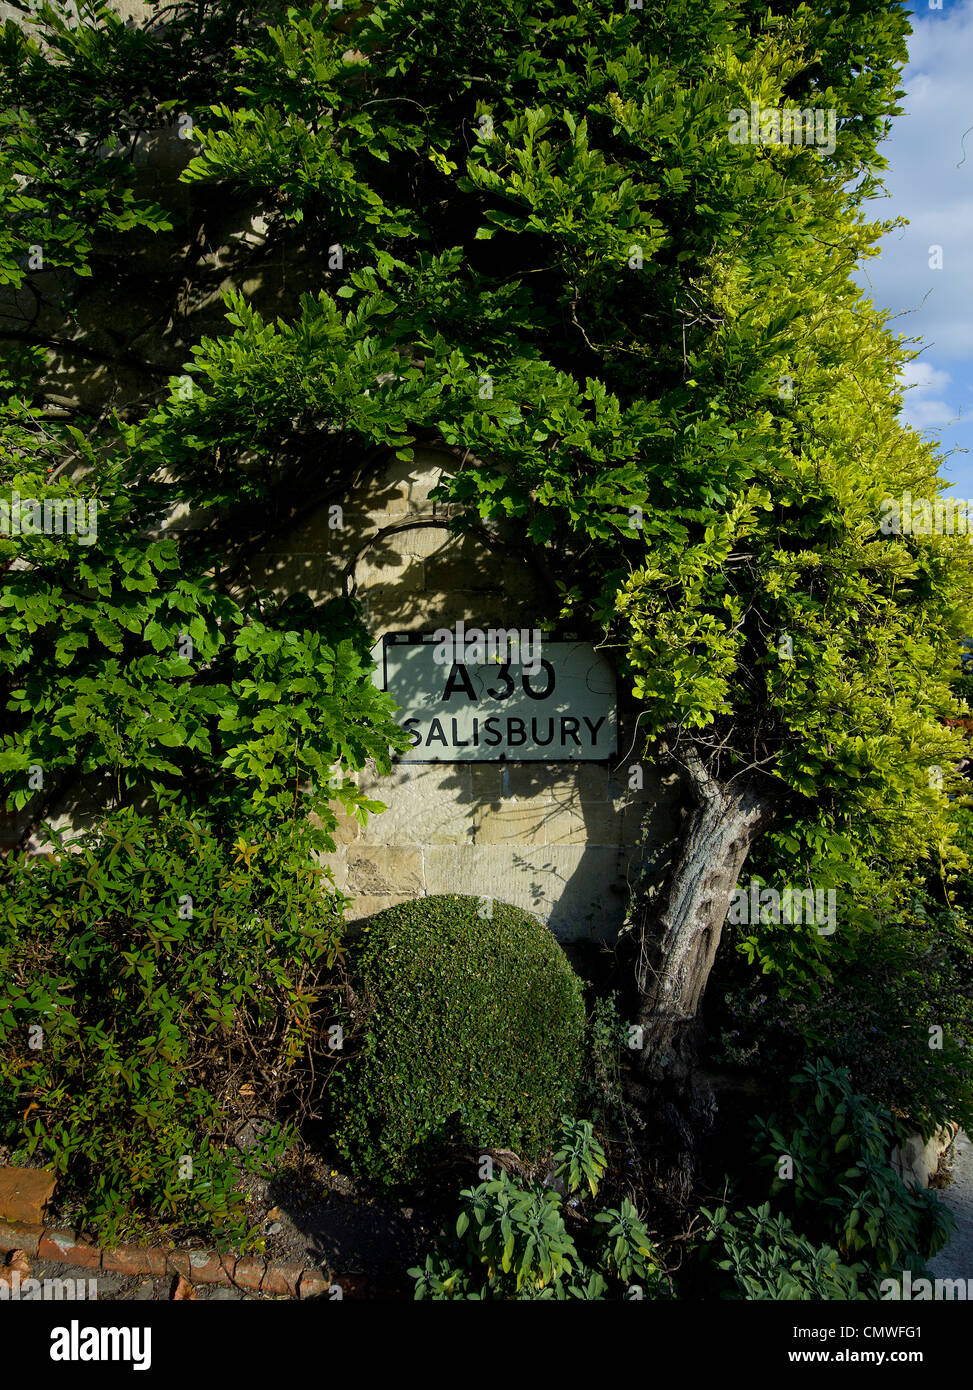 Englisch British Land A30 Salisbury Straßenschild auf Mauerbau mit viel Grün und Pflanzen Stockfoto